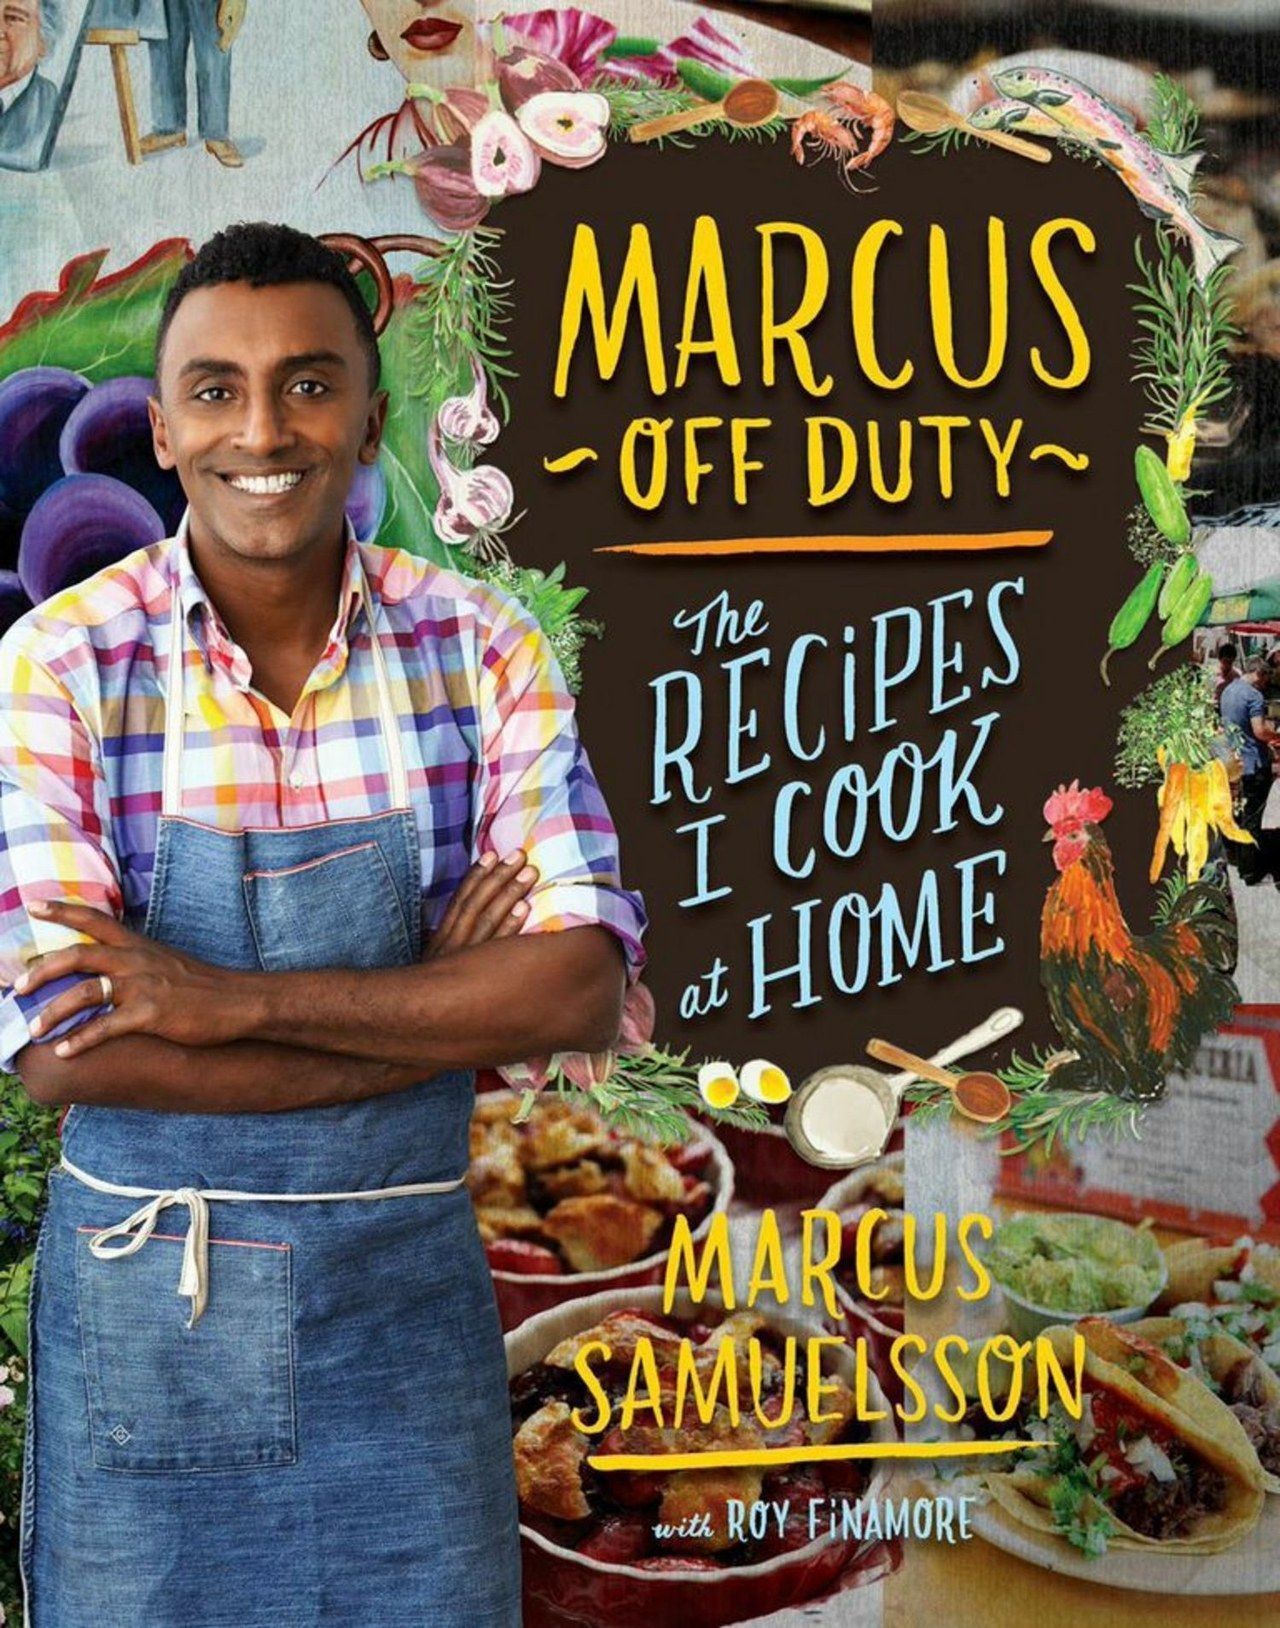 ماركوس samuelsson cookbook